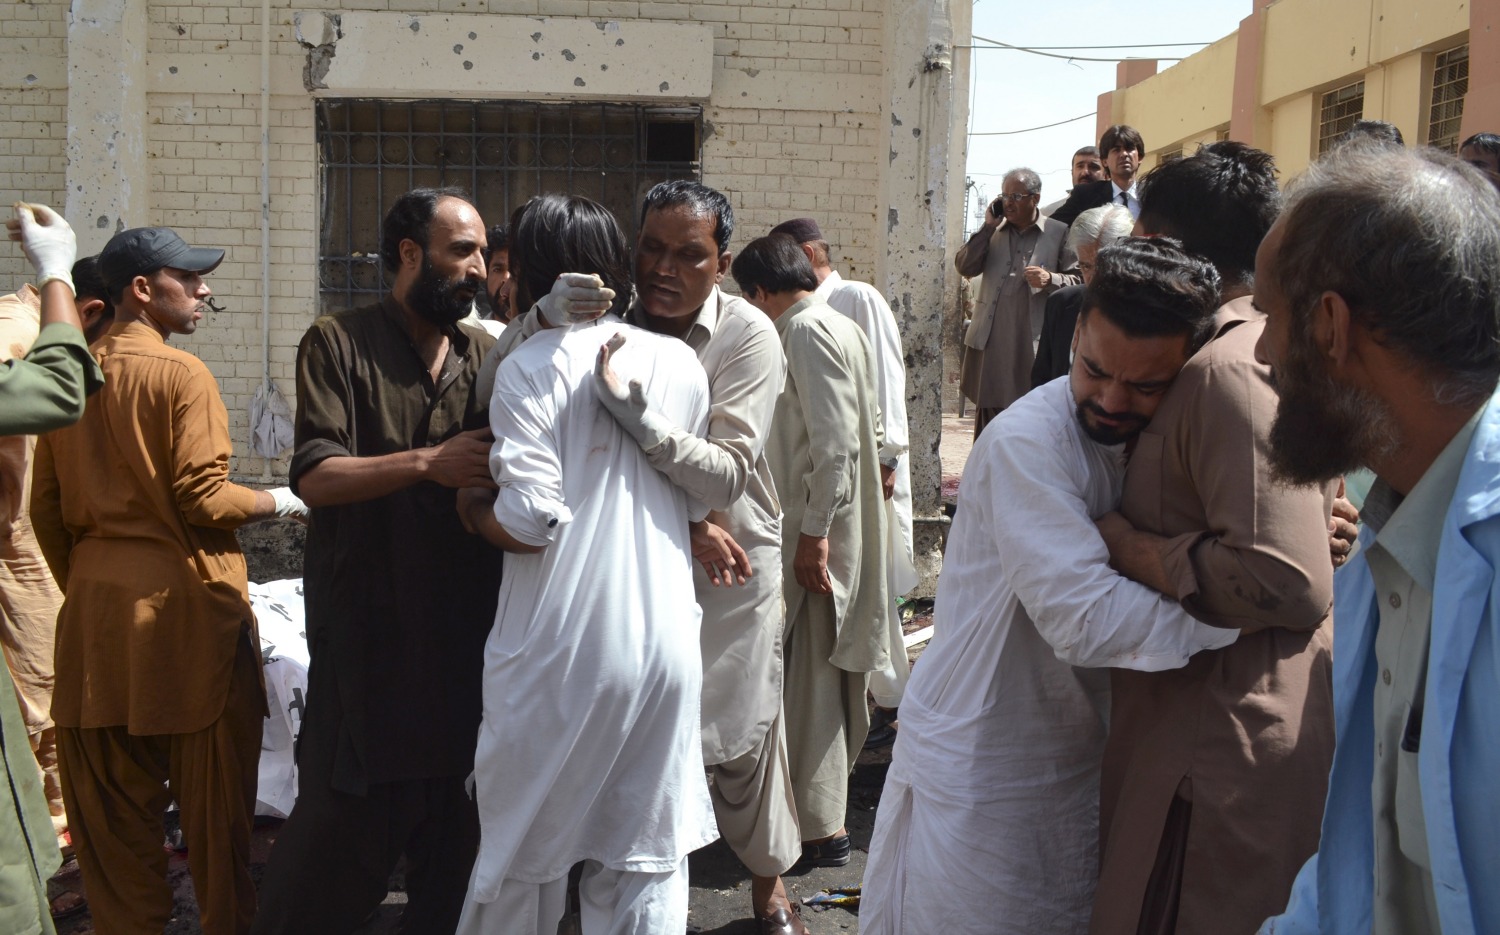 El horror sacude de nuevo Pakistán con un atentado contra un hospital